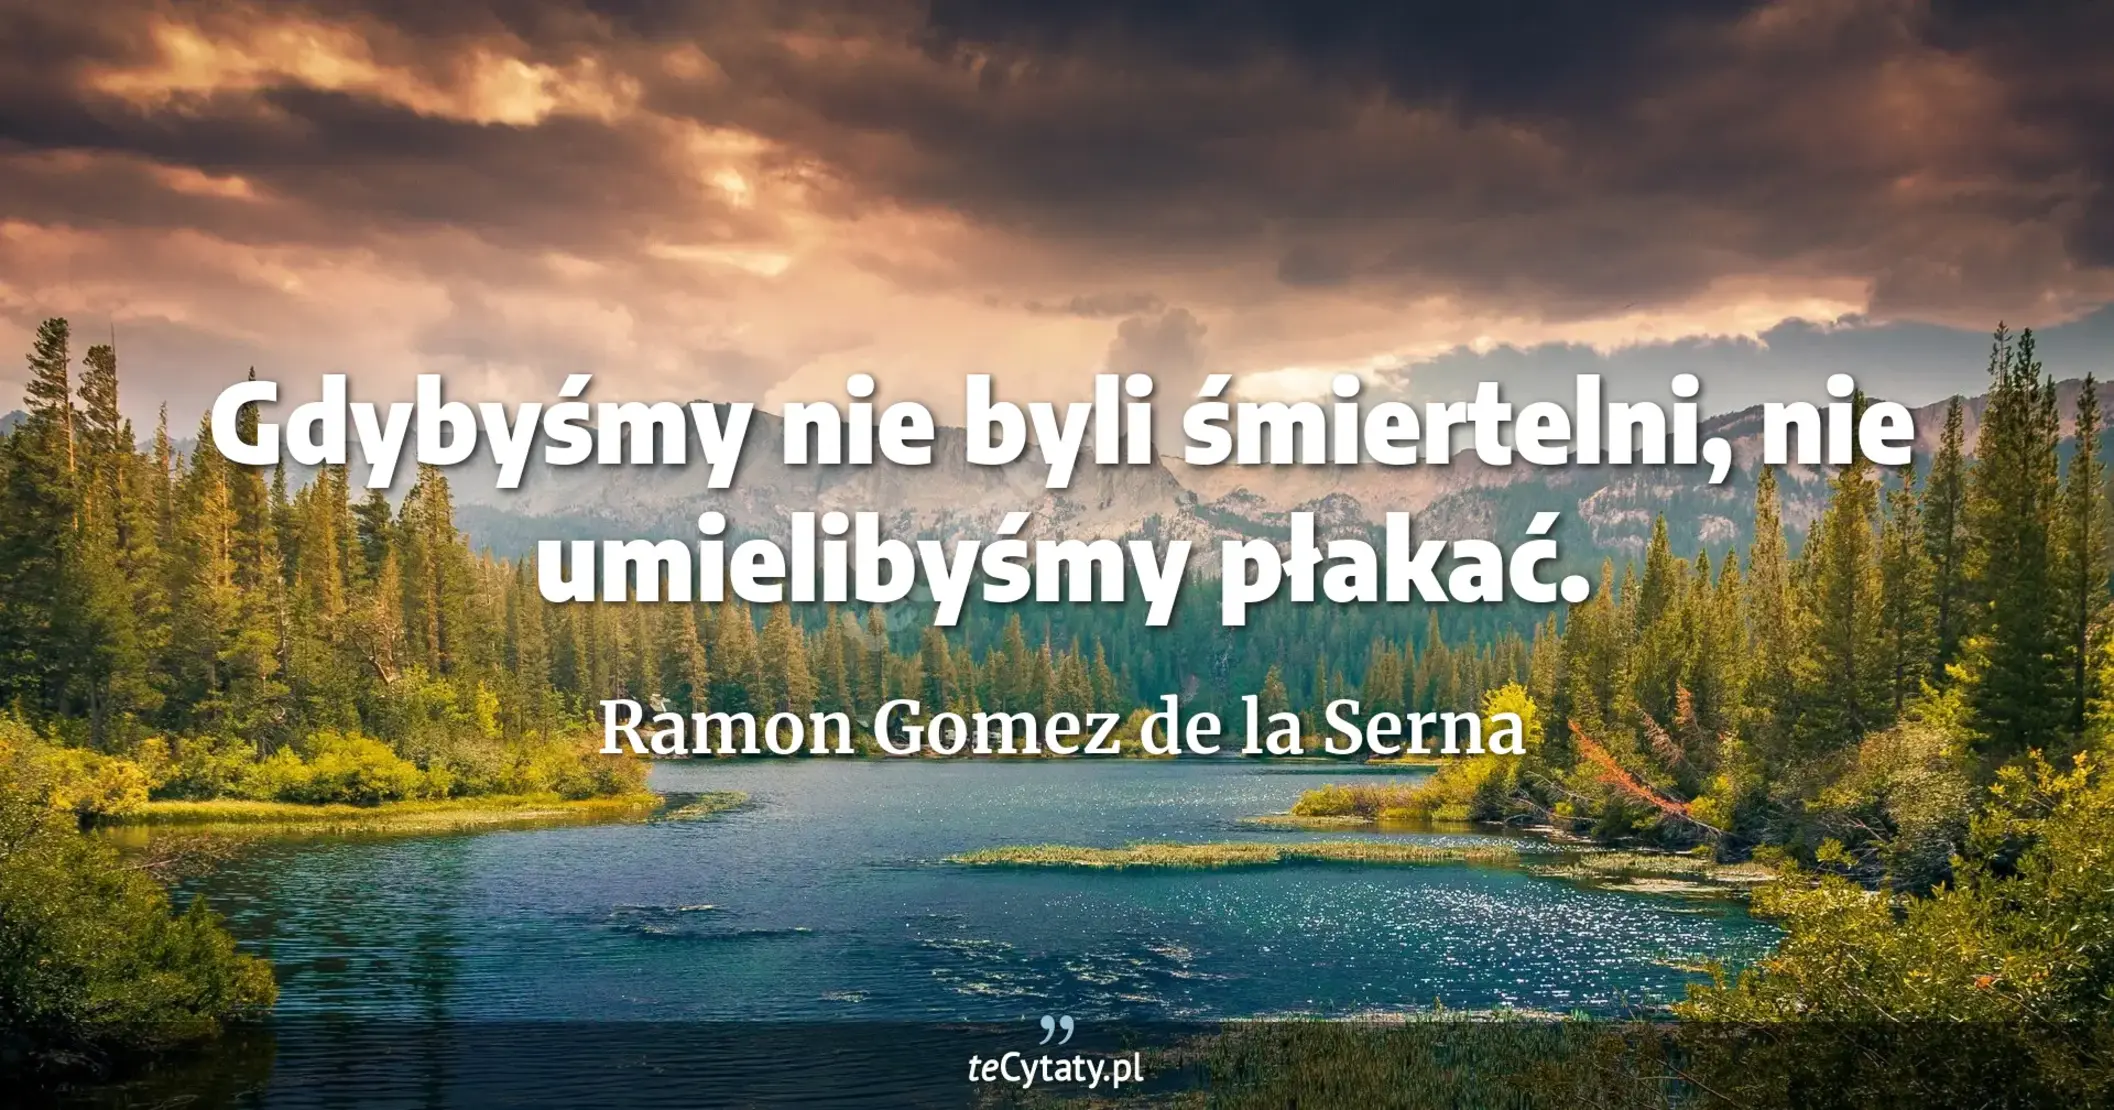 Gdybyśmy nie byli śmiertelni, nie umielibyśmy płakać. - Ramon Gomez de la Serna